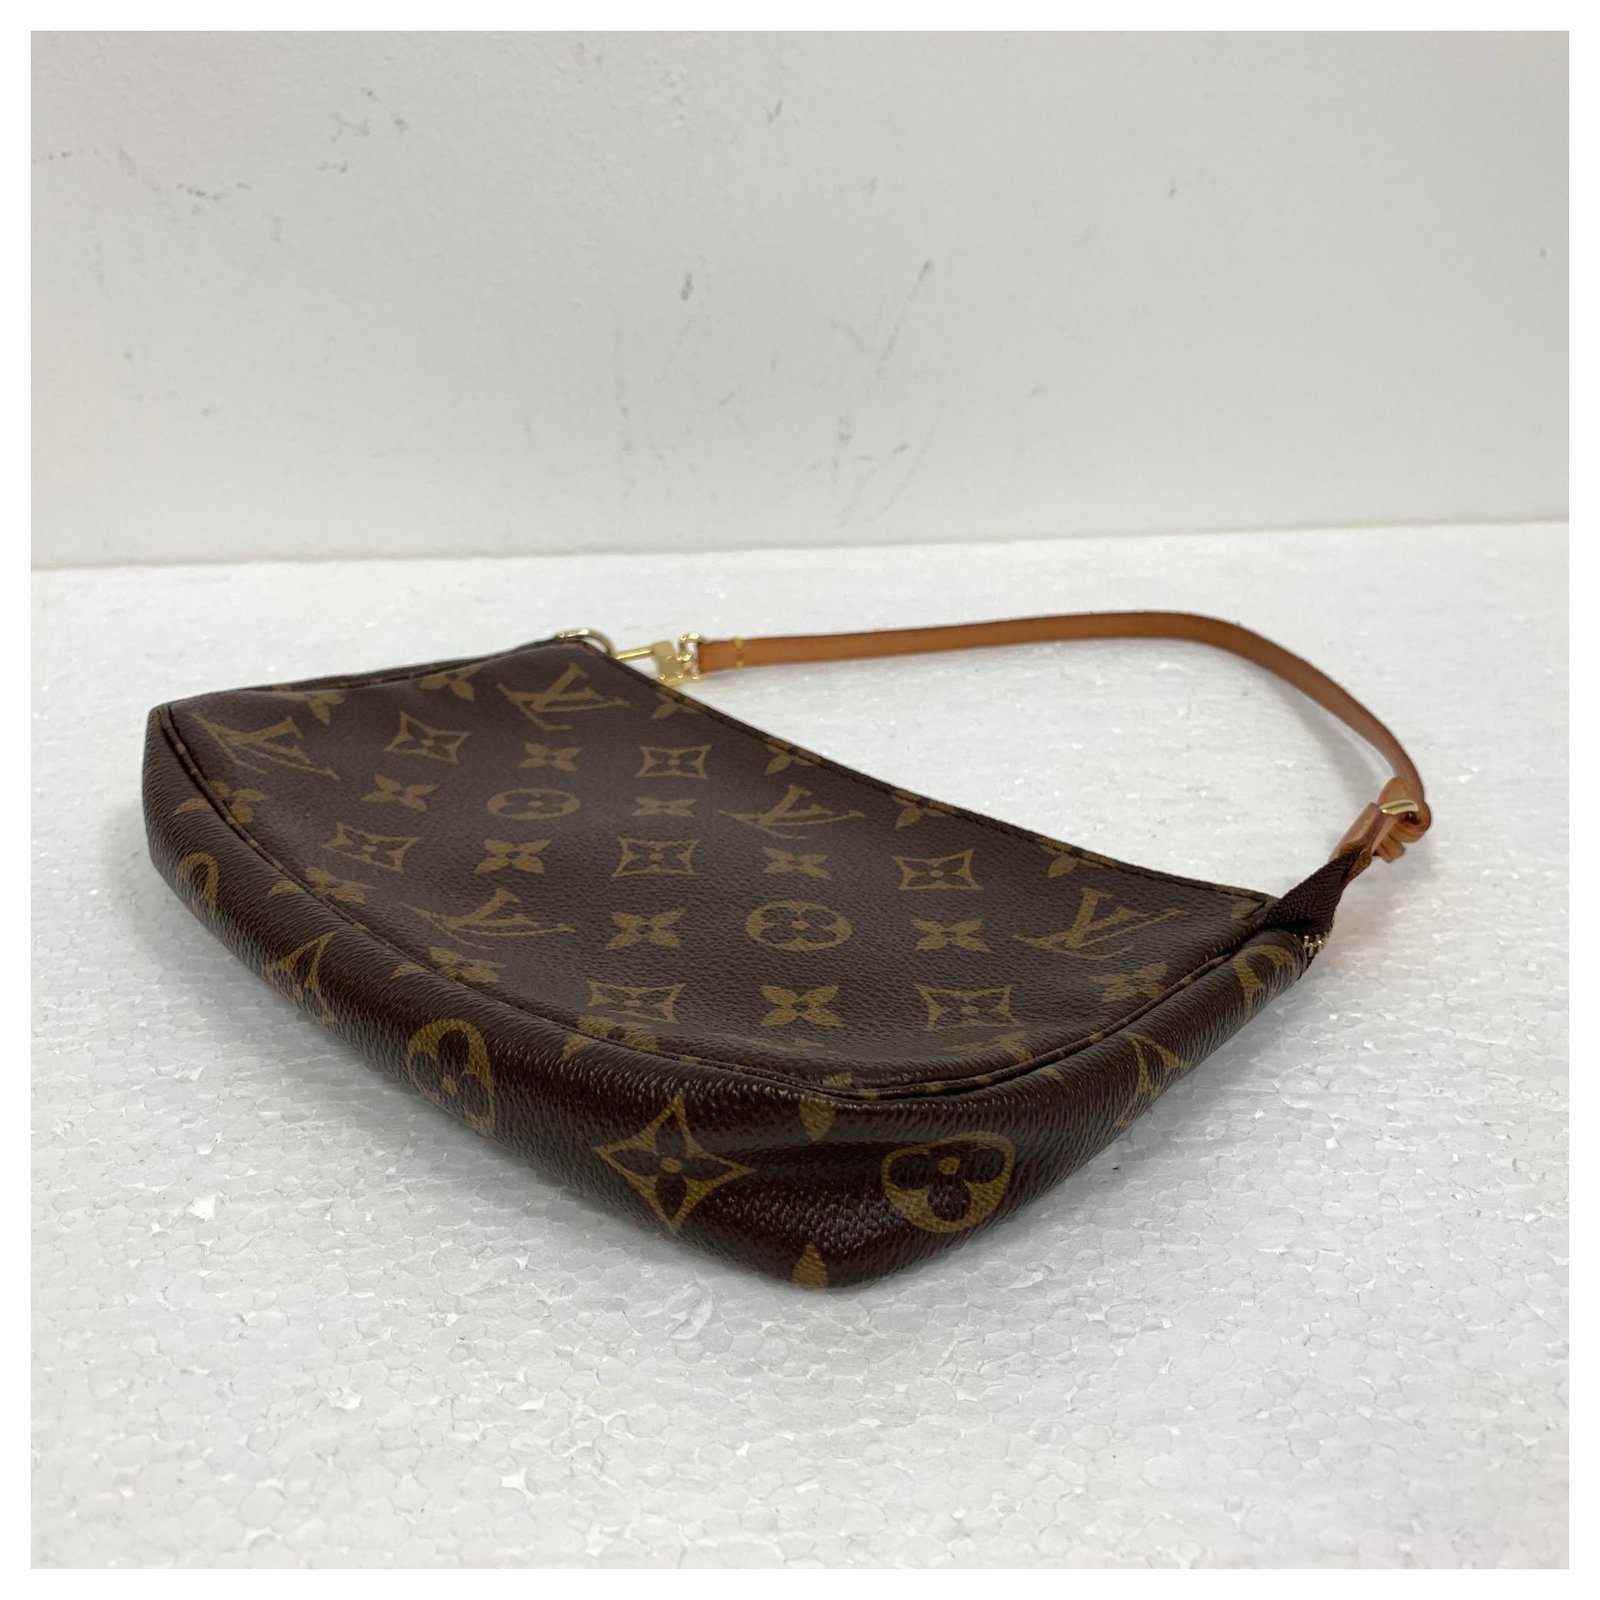 Louis Vuitton Monogram Mini Pochette Accessoires - Brown Mini Bags, Handbags  - LOU760012